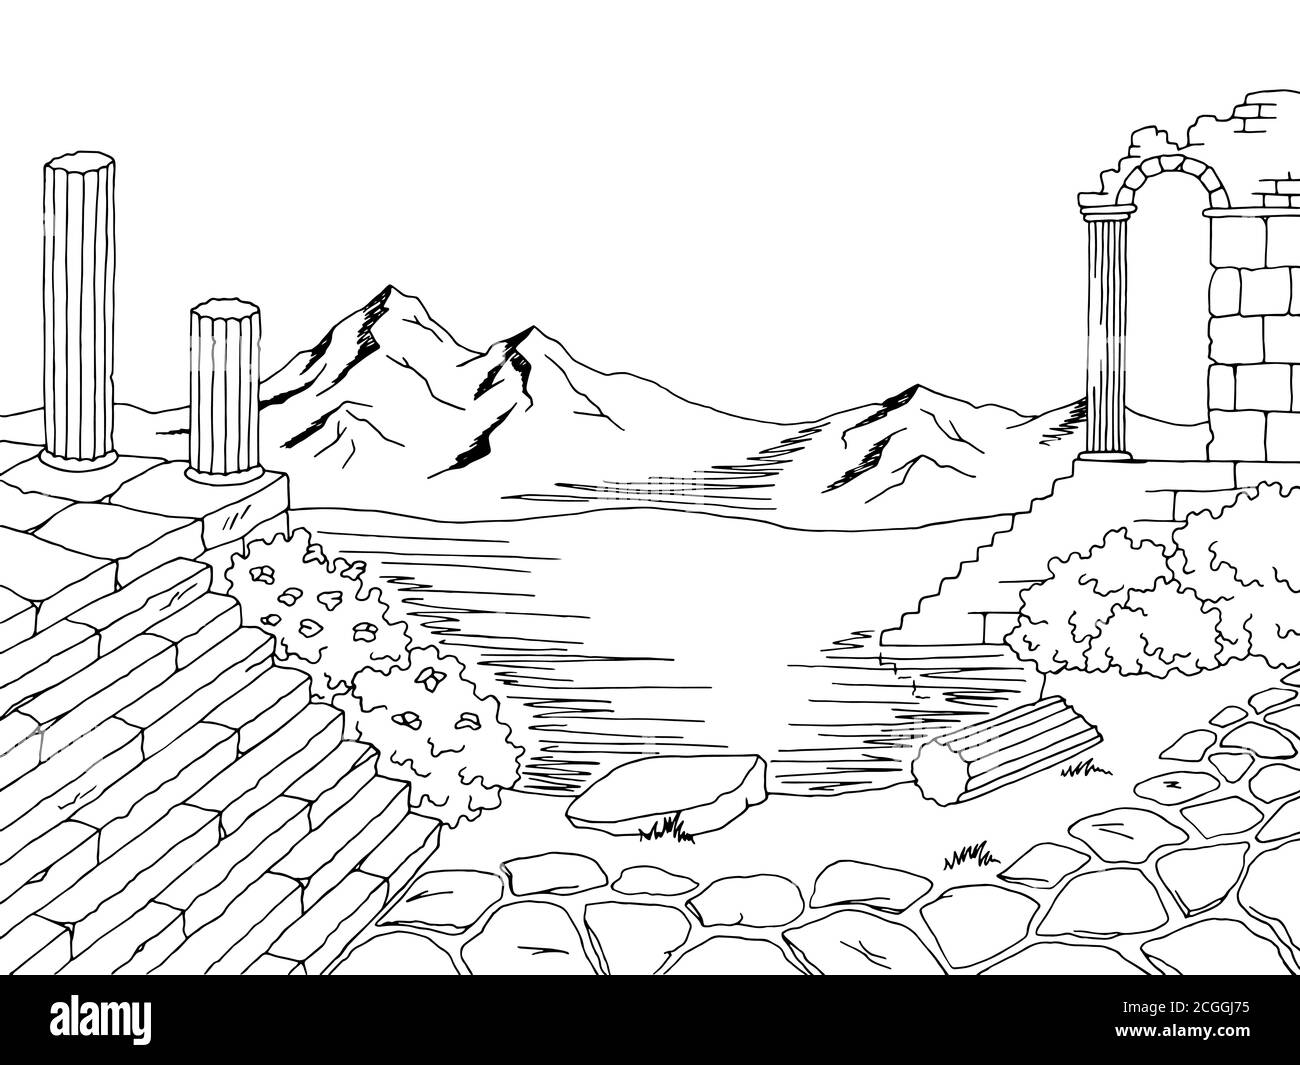 Ruine paysage graphique noir blanc esquisse illustration vecteur Illustration de Vecteur